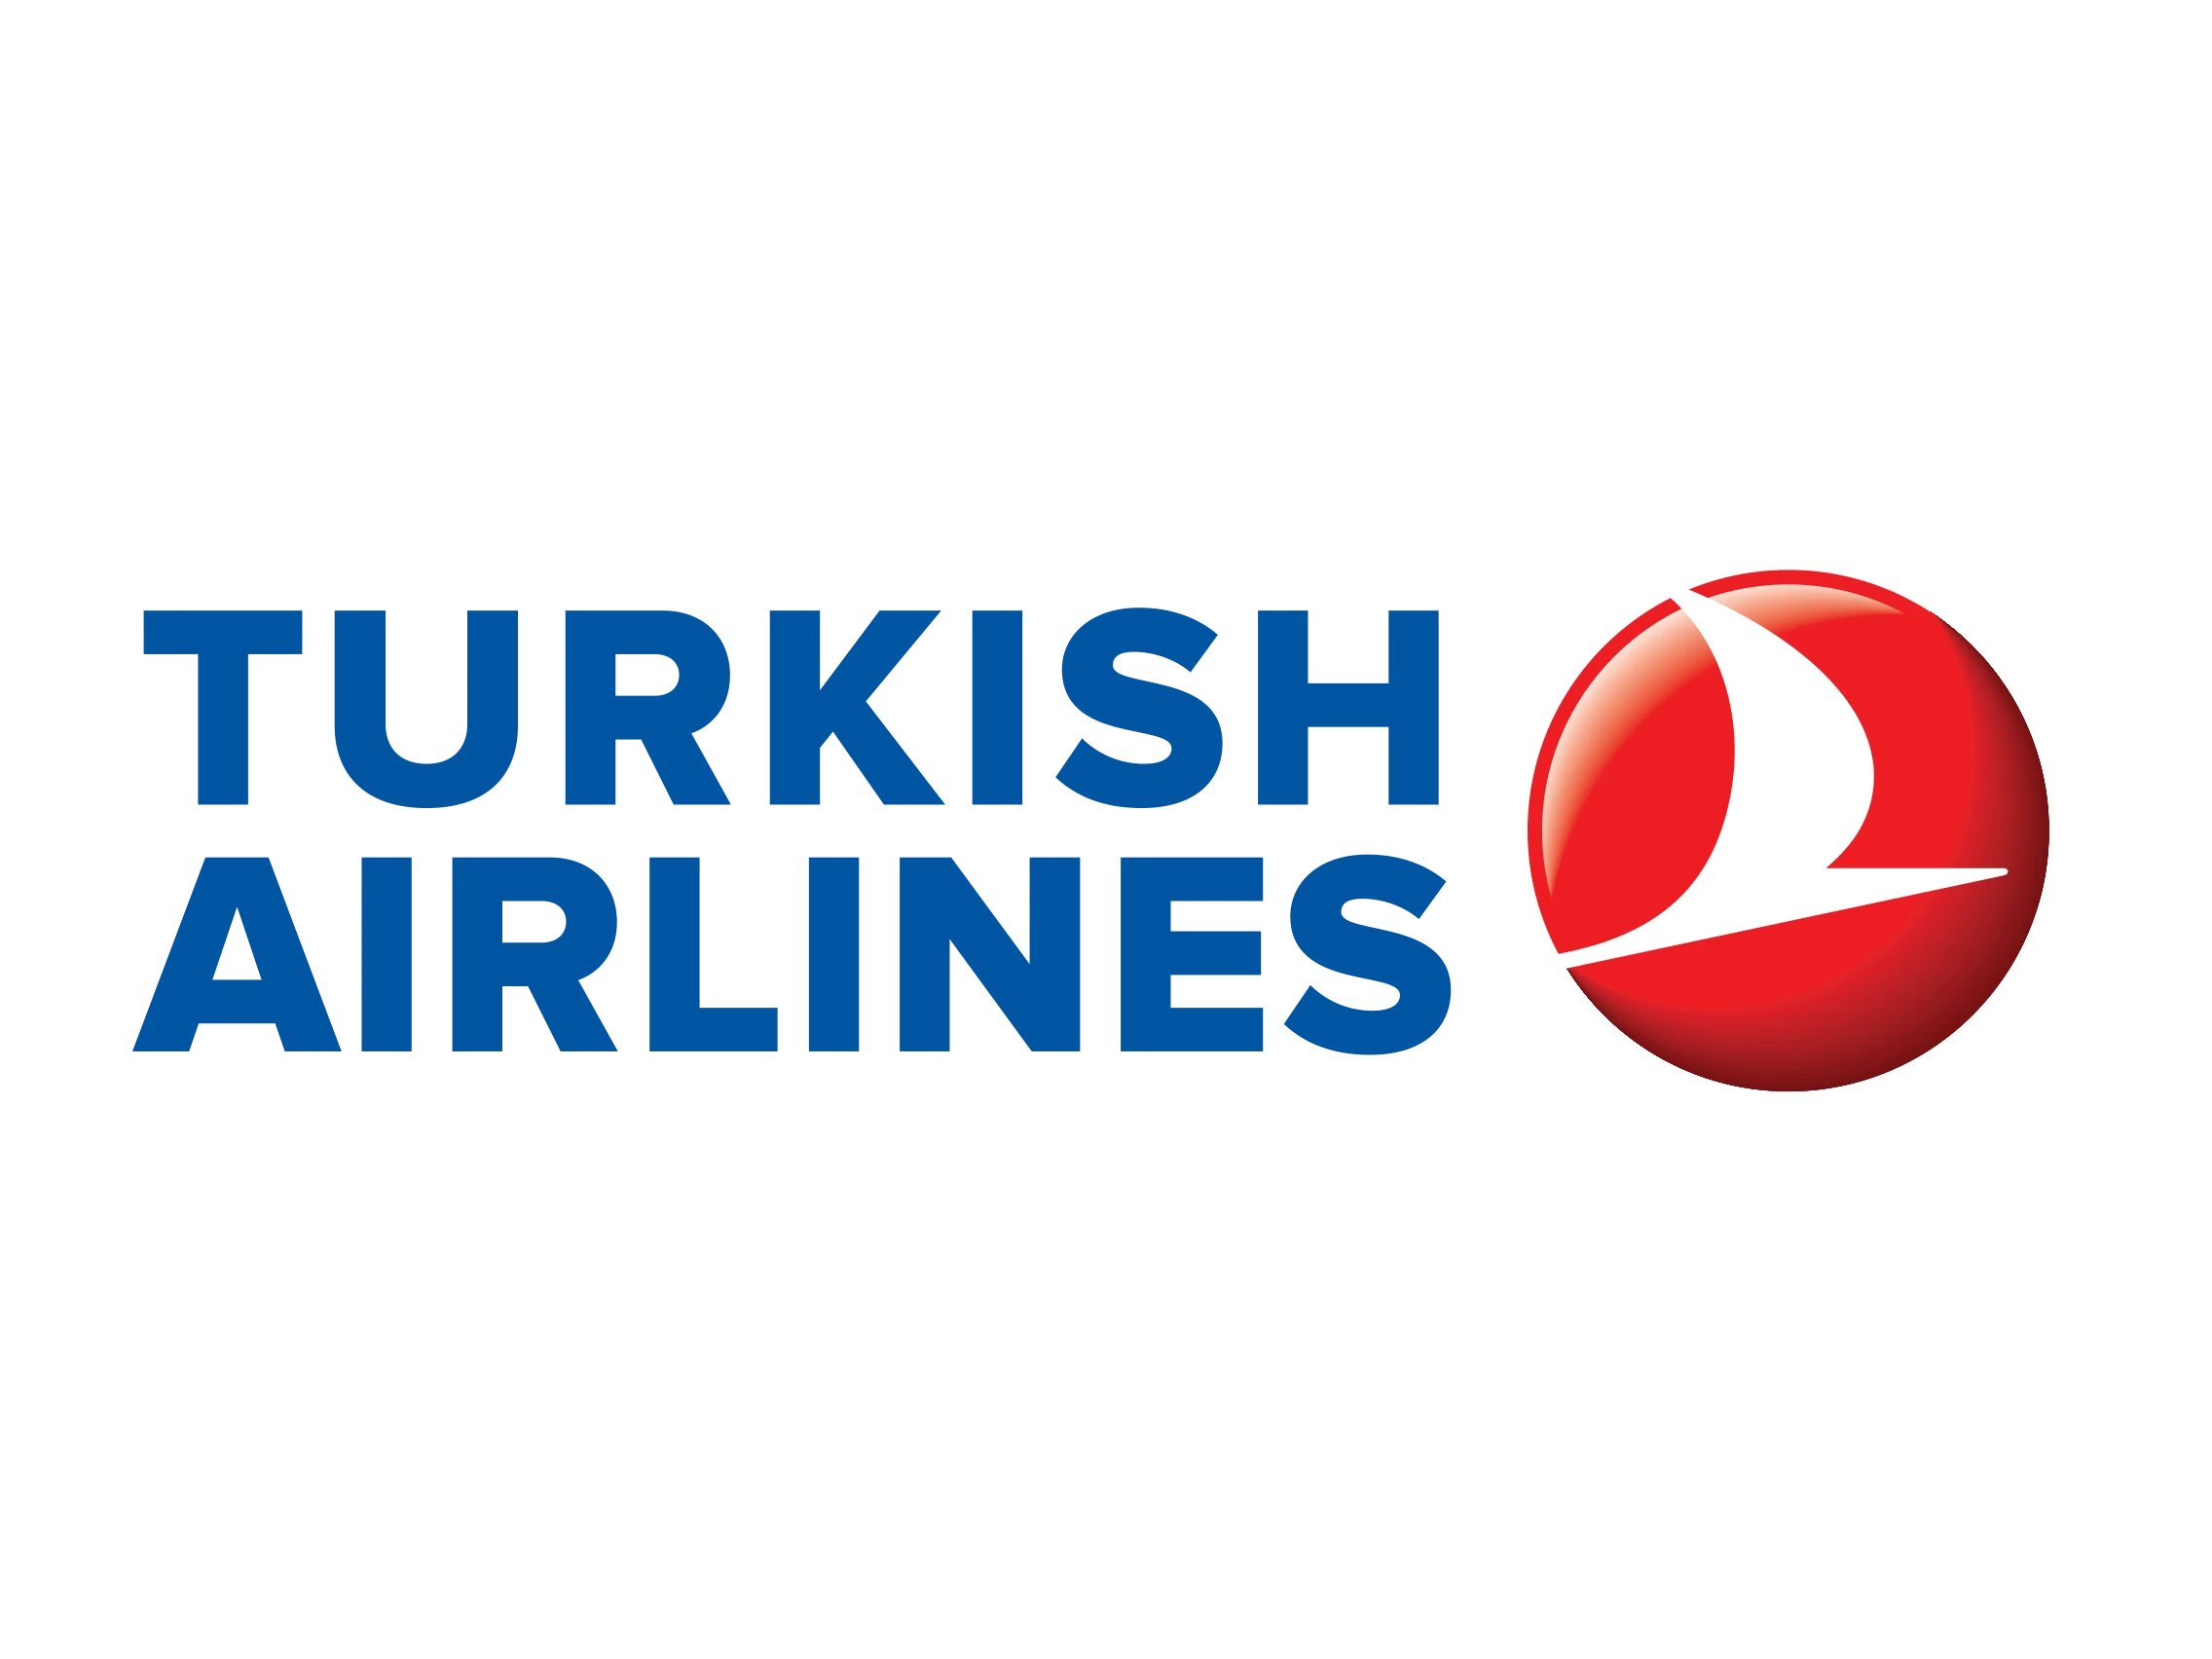 turkish-airline